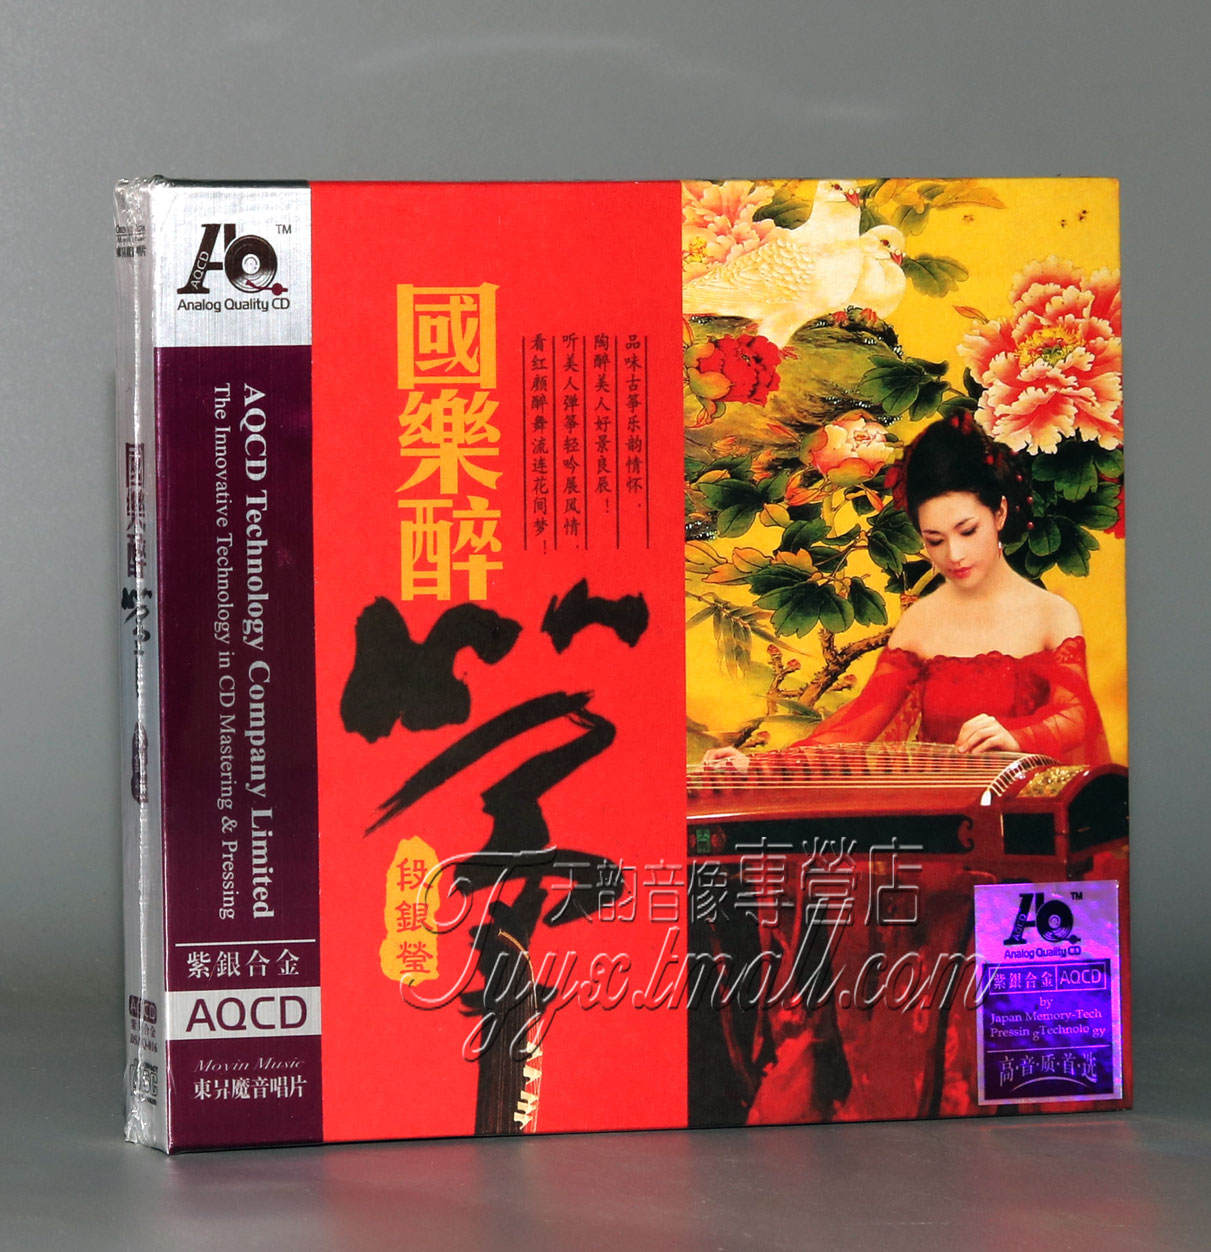 正版魔音唱片古筝/段银莹国乐醉筝紫银合金AQCD 1CD